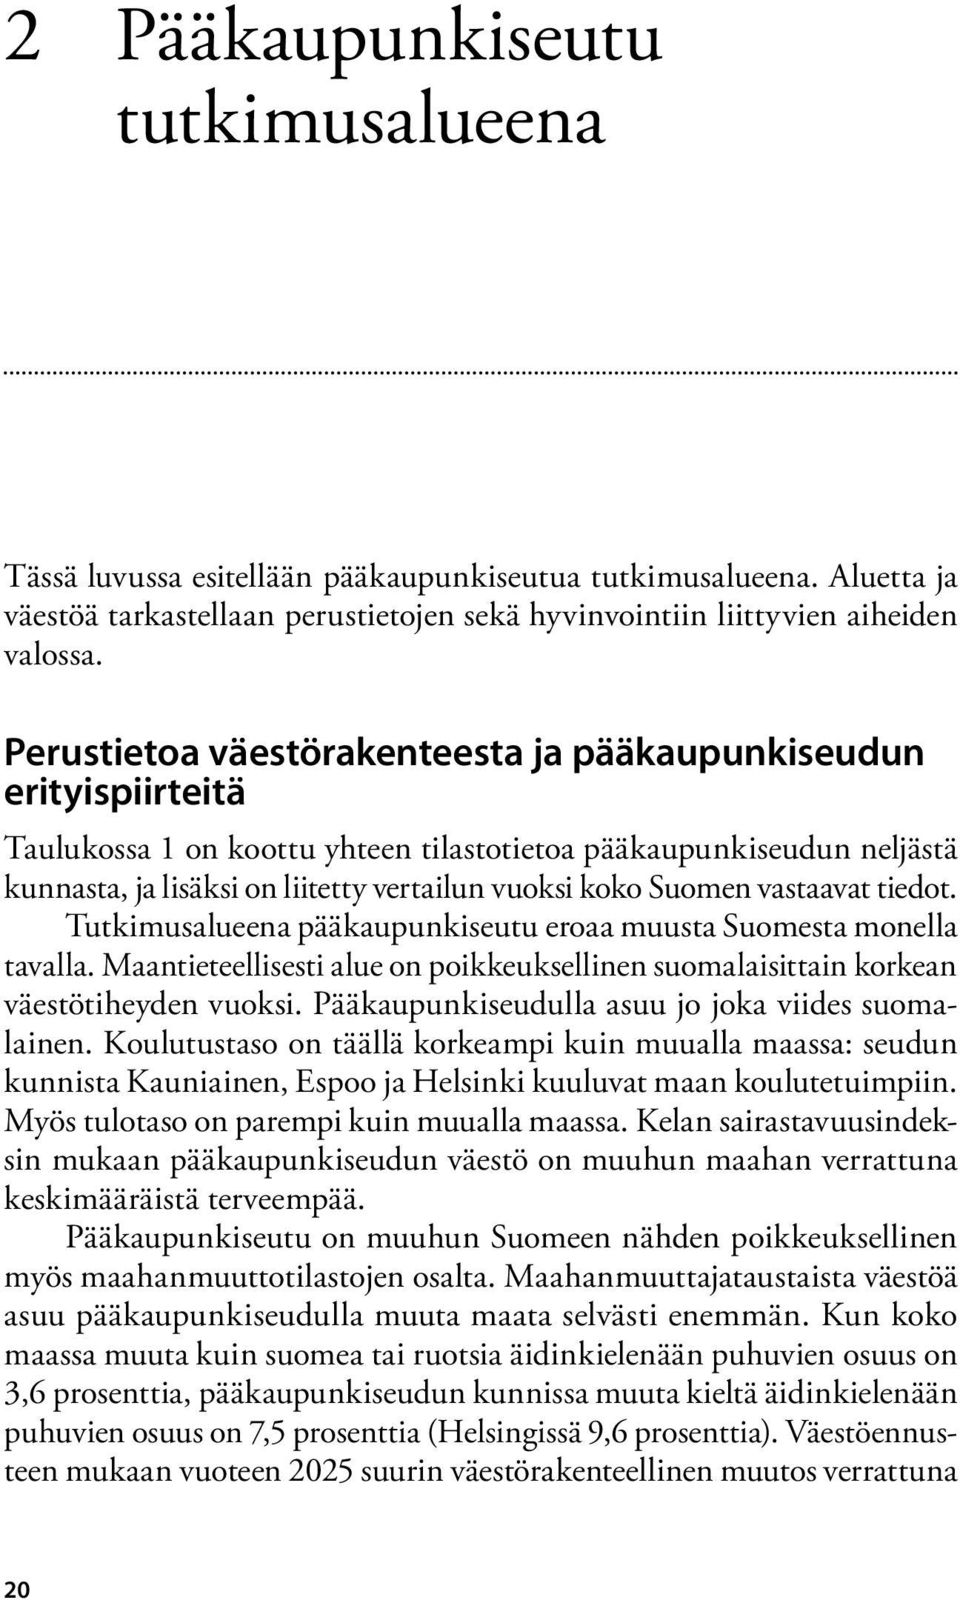 Suomen vastaavat tiedot. Tutkimusalueena pääkaupunkiseutu eroaa muusta Suomesta monella tavalla. Maantieteellisesti alue on poikkeuksellinen suomalaisittain korkean väestötiheyden vuoksi.